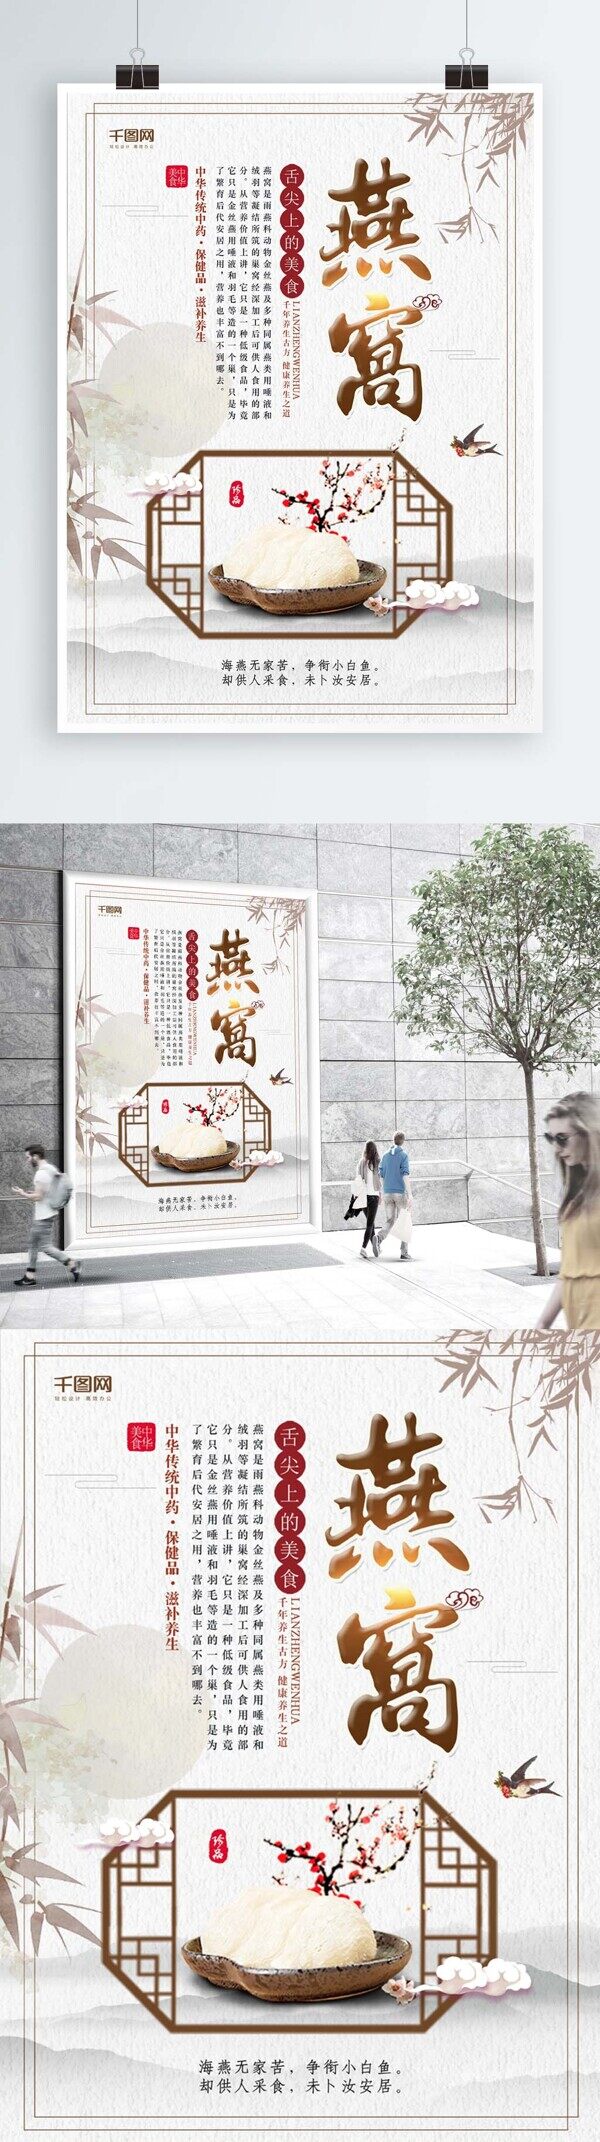 简约中国风燕窝宣传海报设计